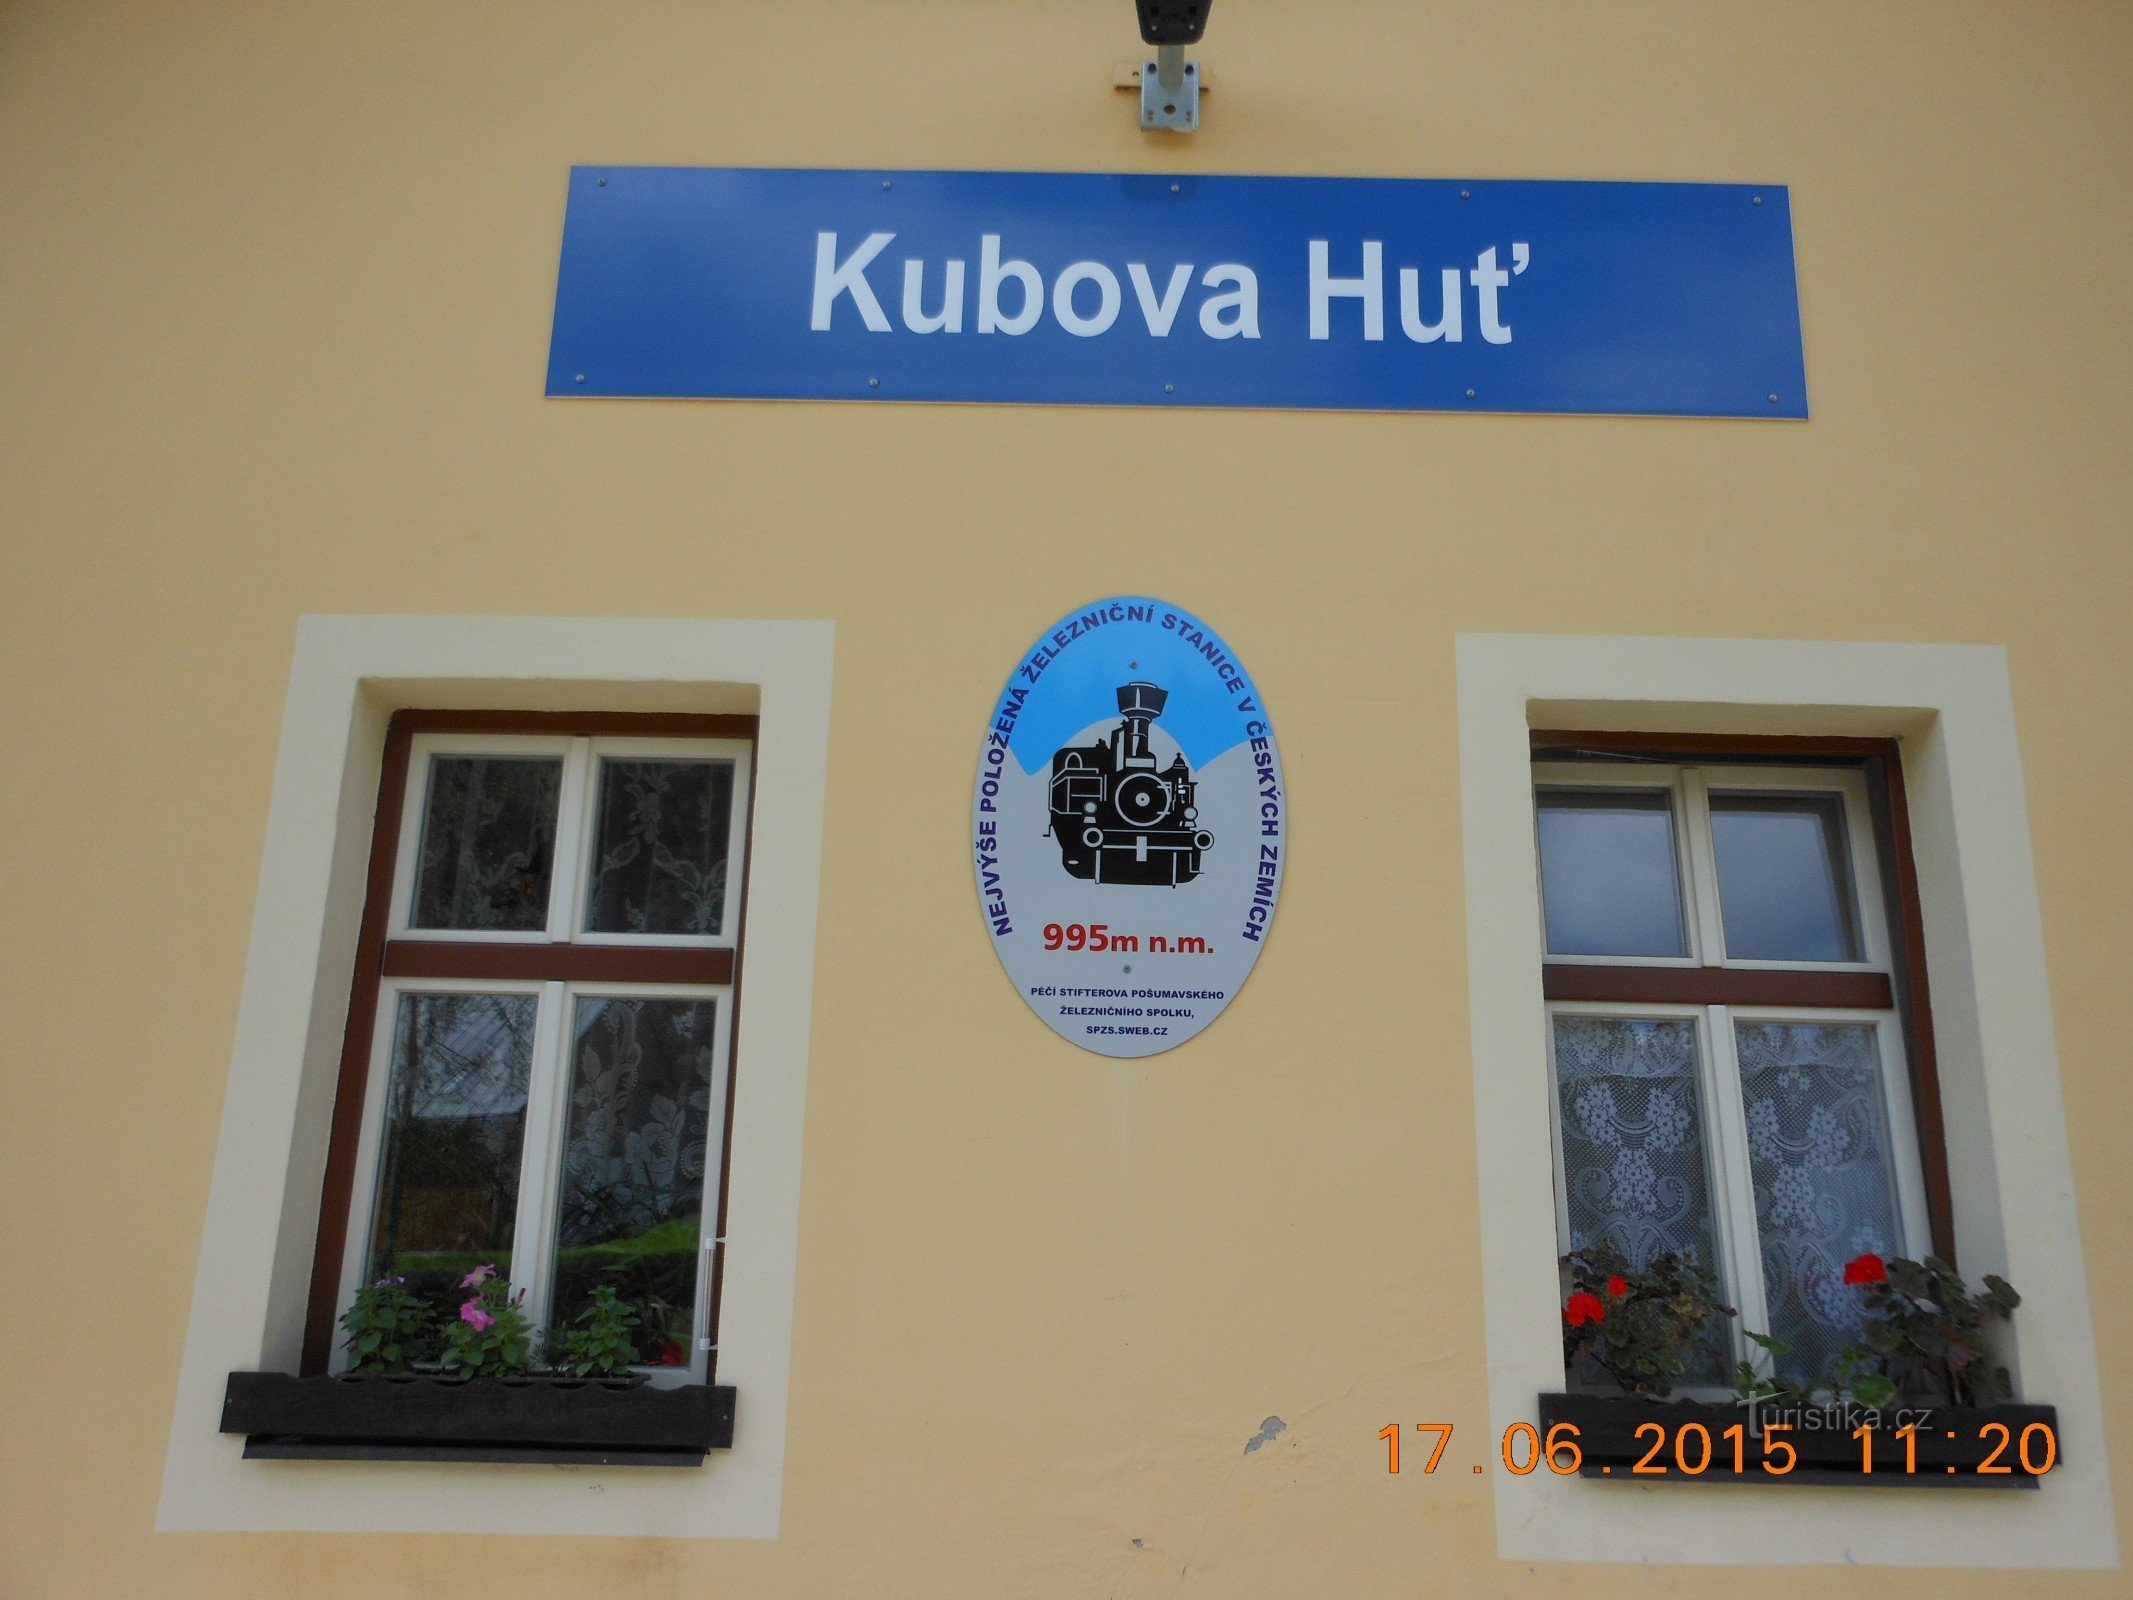 Kubova Huť - het hoogste treinstation in Bohemen